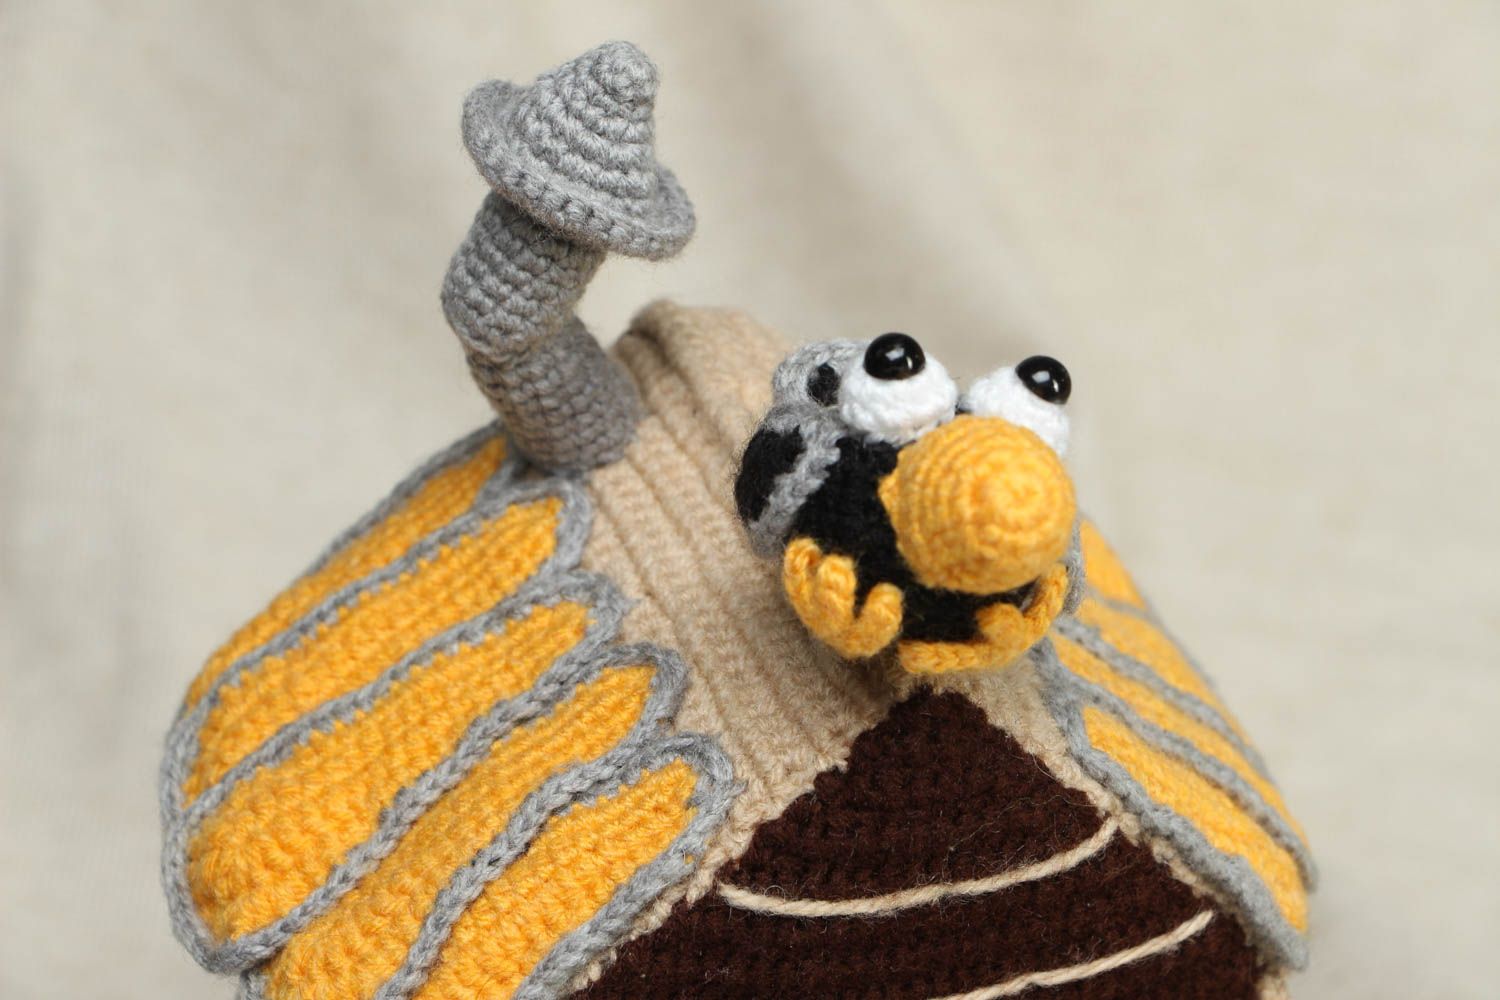 Designer crochet toy Hut on Chicken Legs photo 2